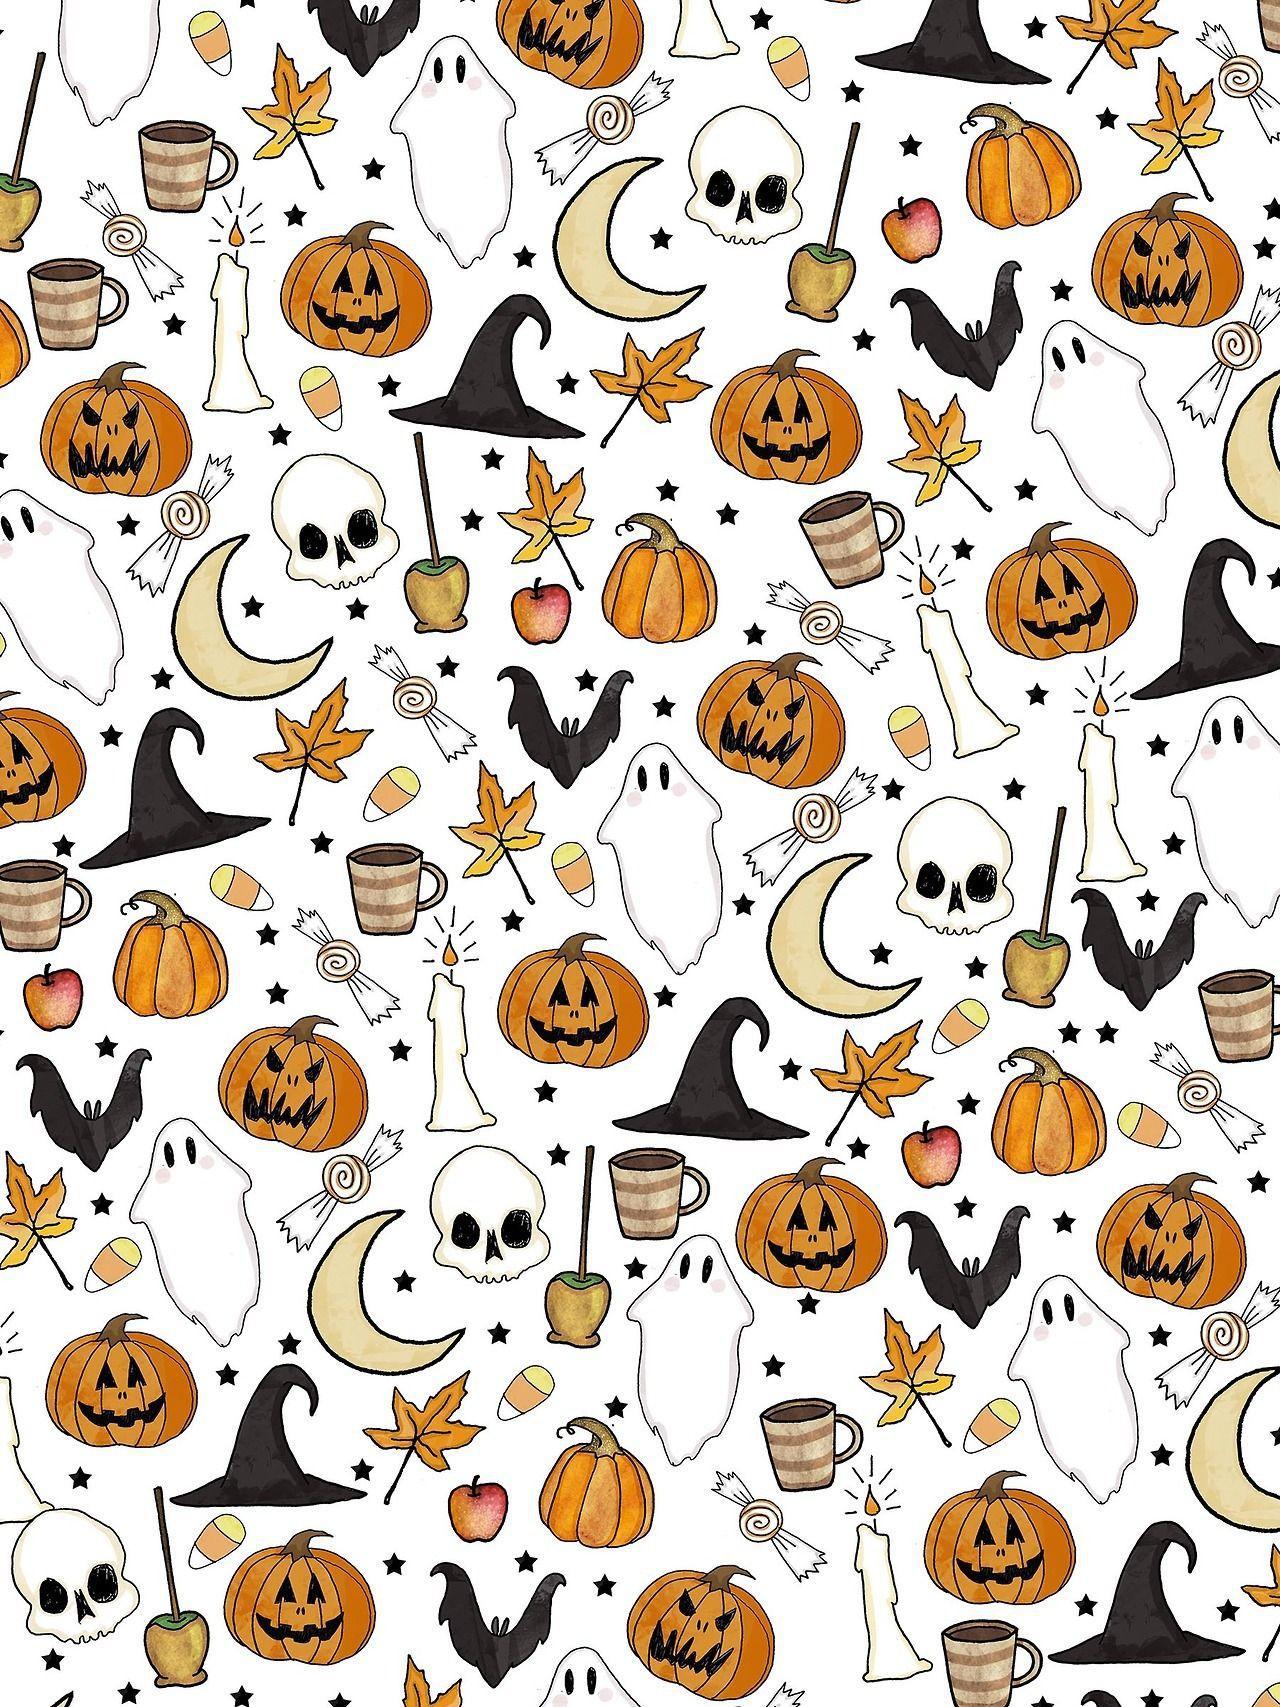 Aesthetic Halloween Ipad Wallpapers